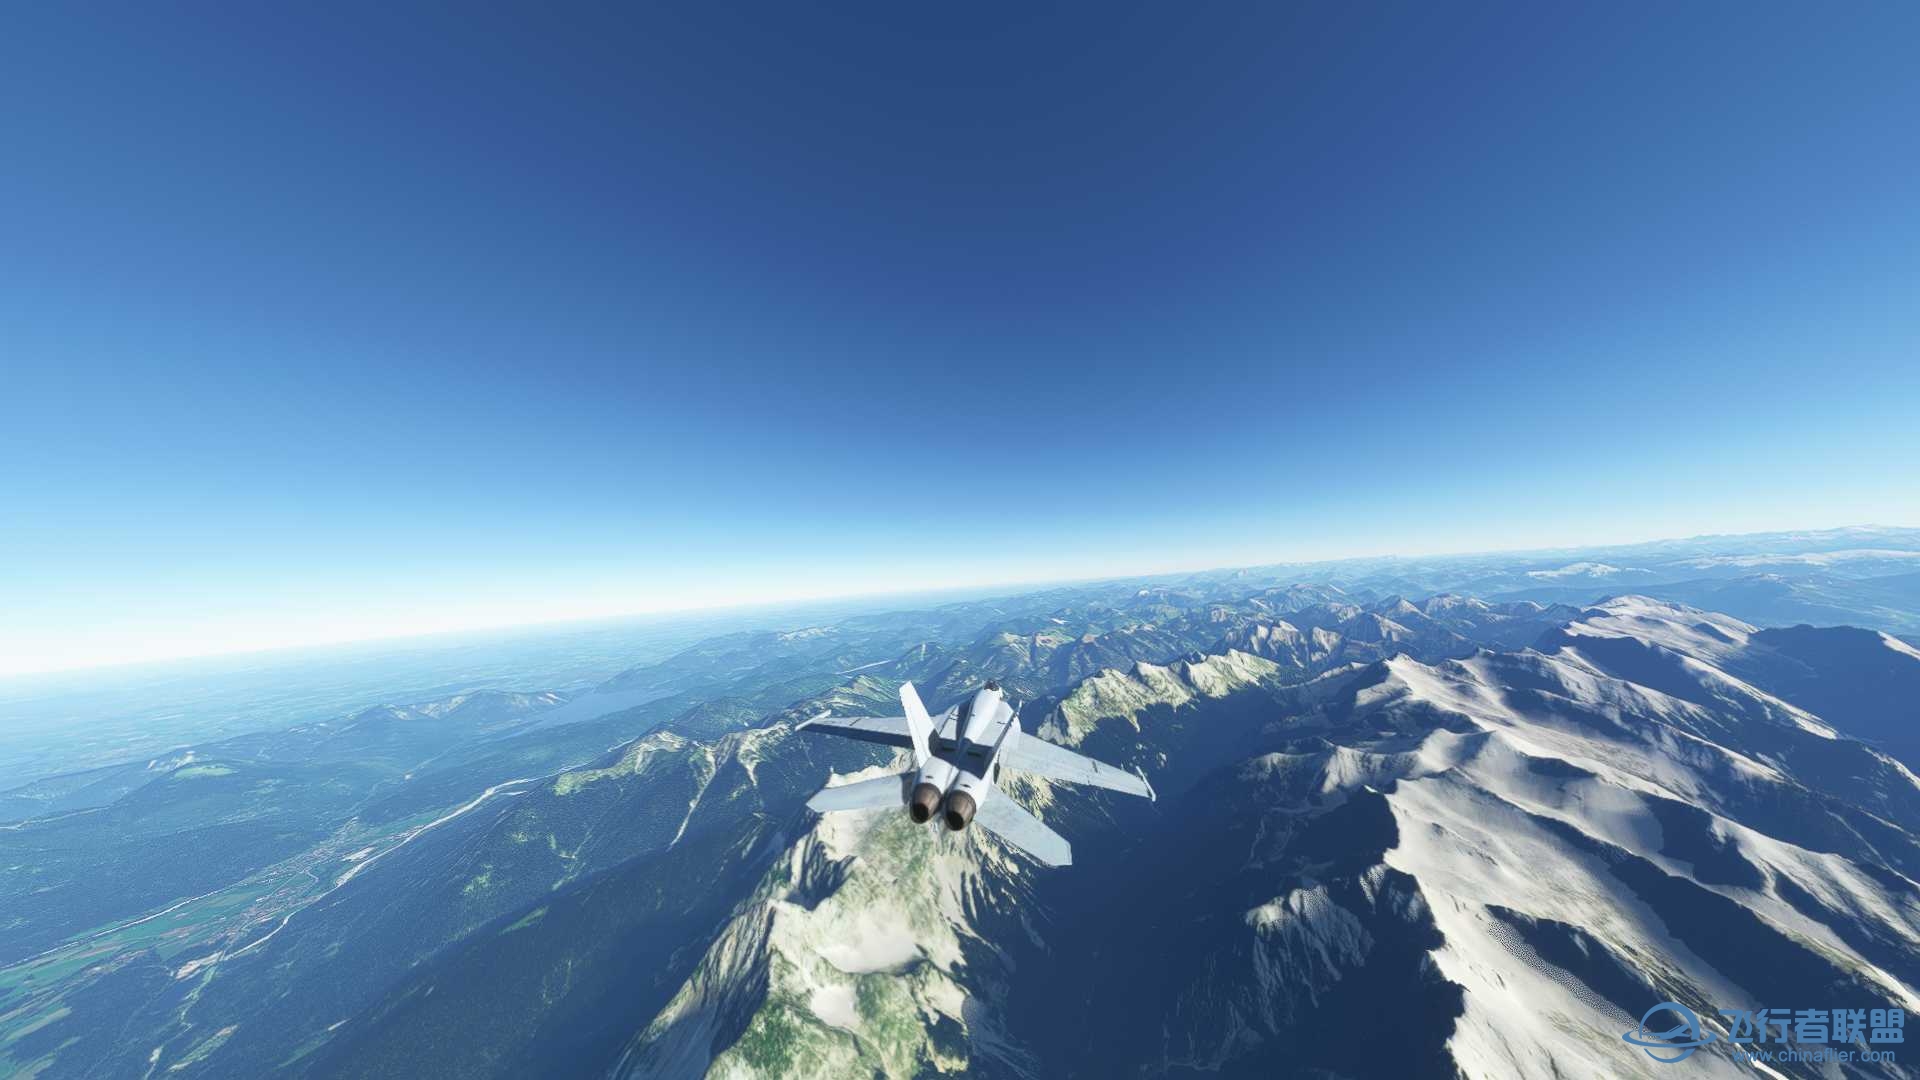 阿尔卑斯山脉附近飞行无法进行游戏-6738 